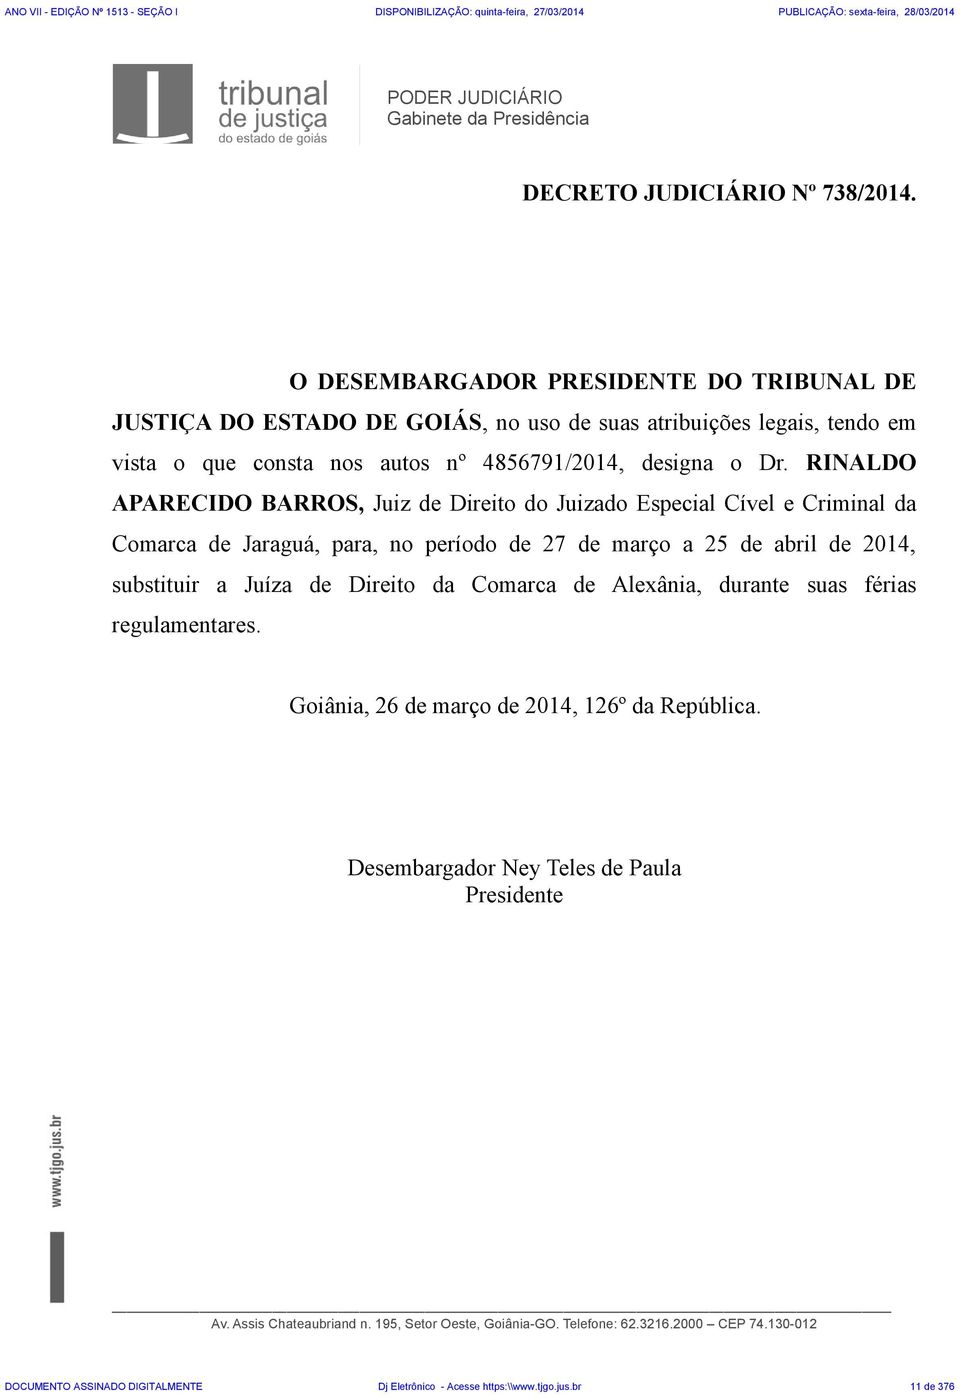 RINALDO APARECIDO BARROS, Juiz de Direito do Juizado Especial Cível e Criminal da Comarca de Jaraguá, para, no período de 27 de março a 25 de abril de 2014, substituir a Juíza de Direito da